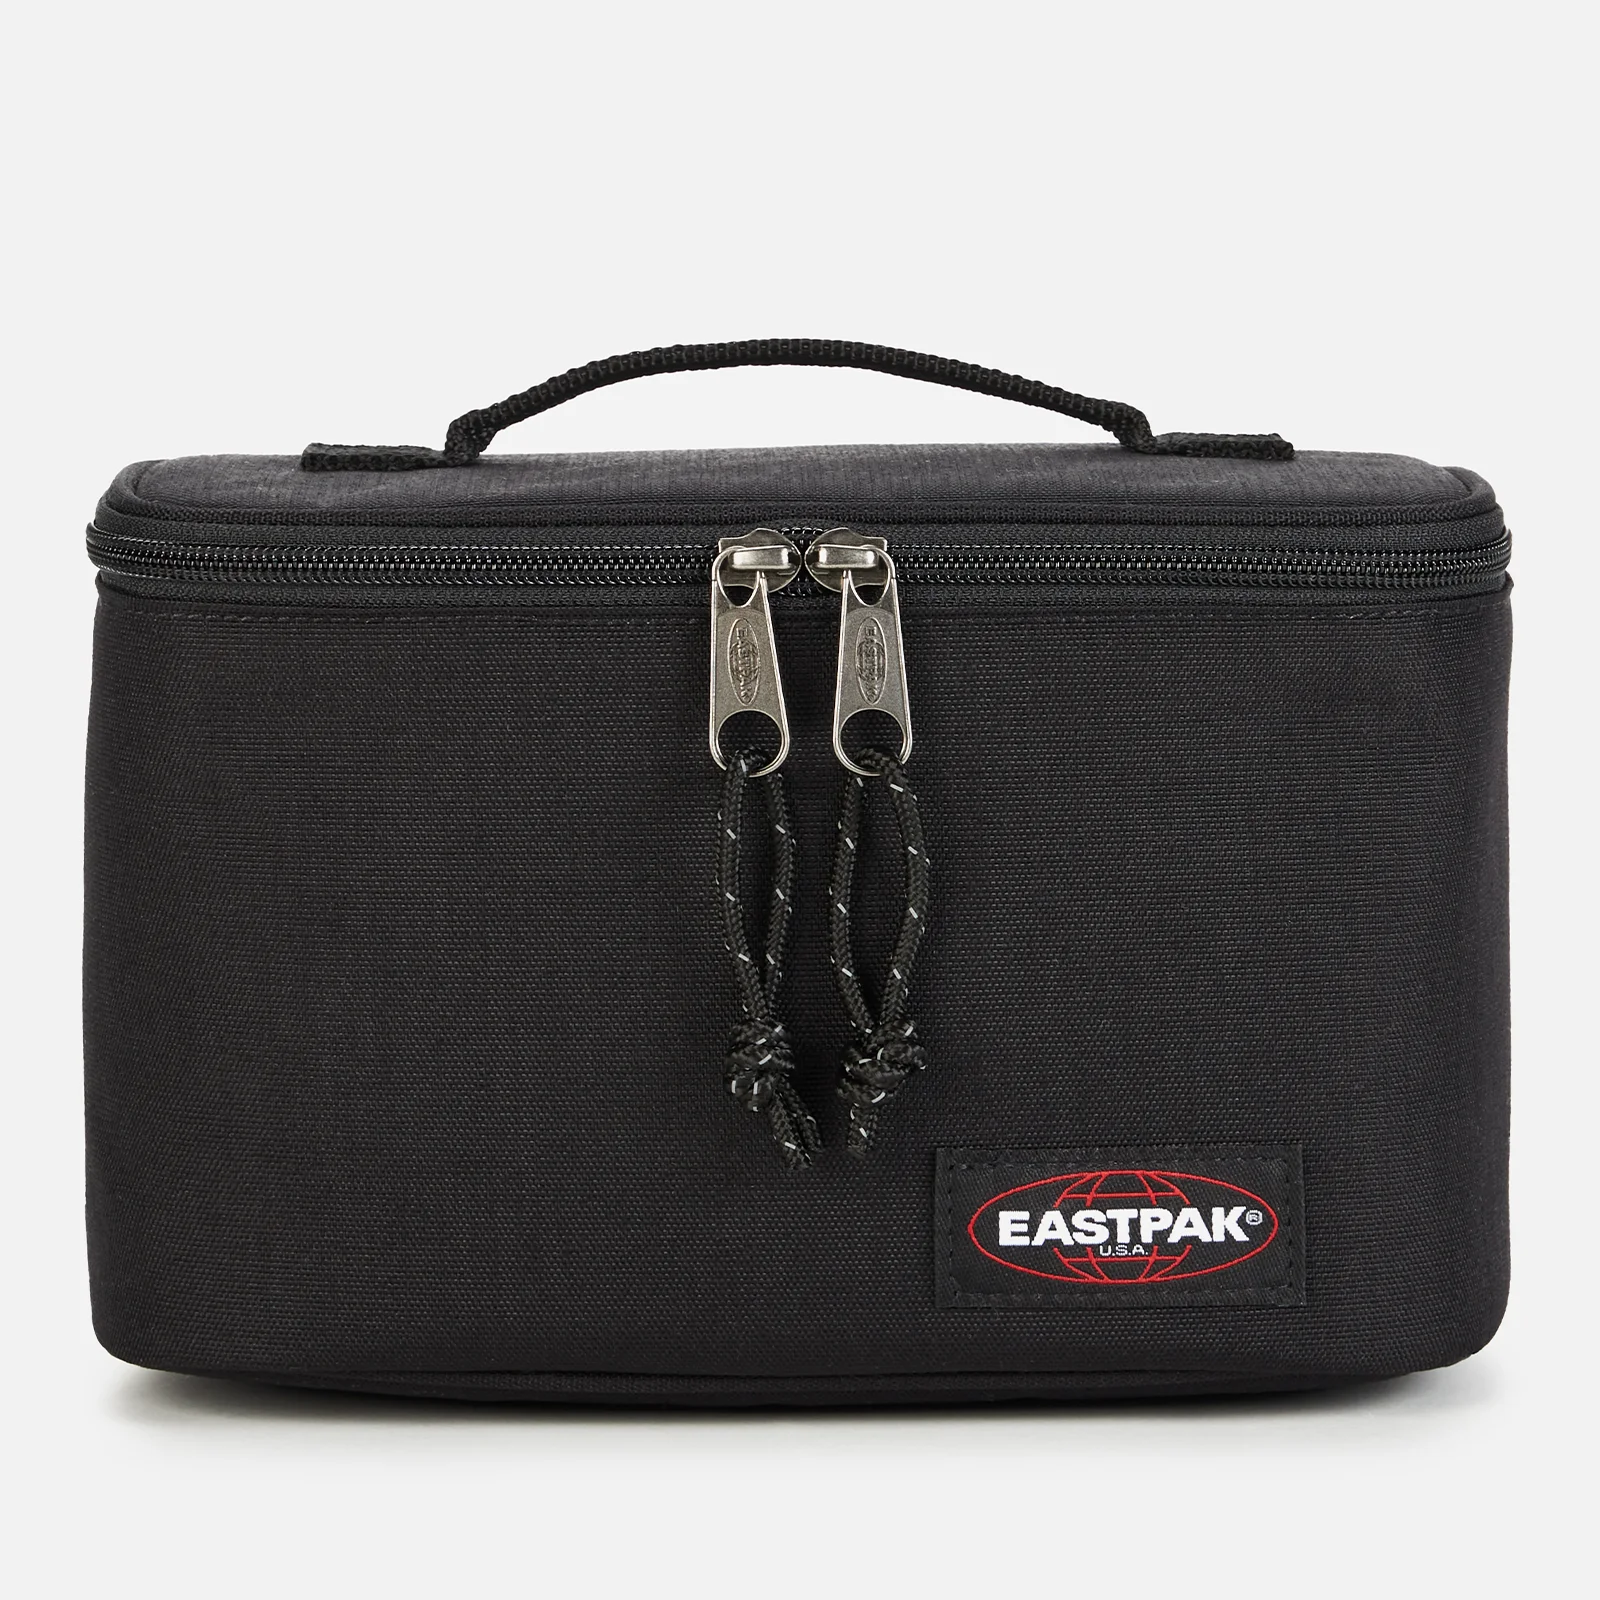 Eastpak Oval Lunch Bag - Black Image 1